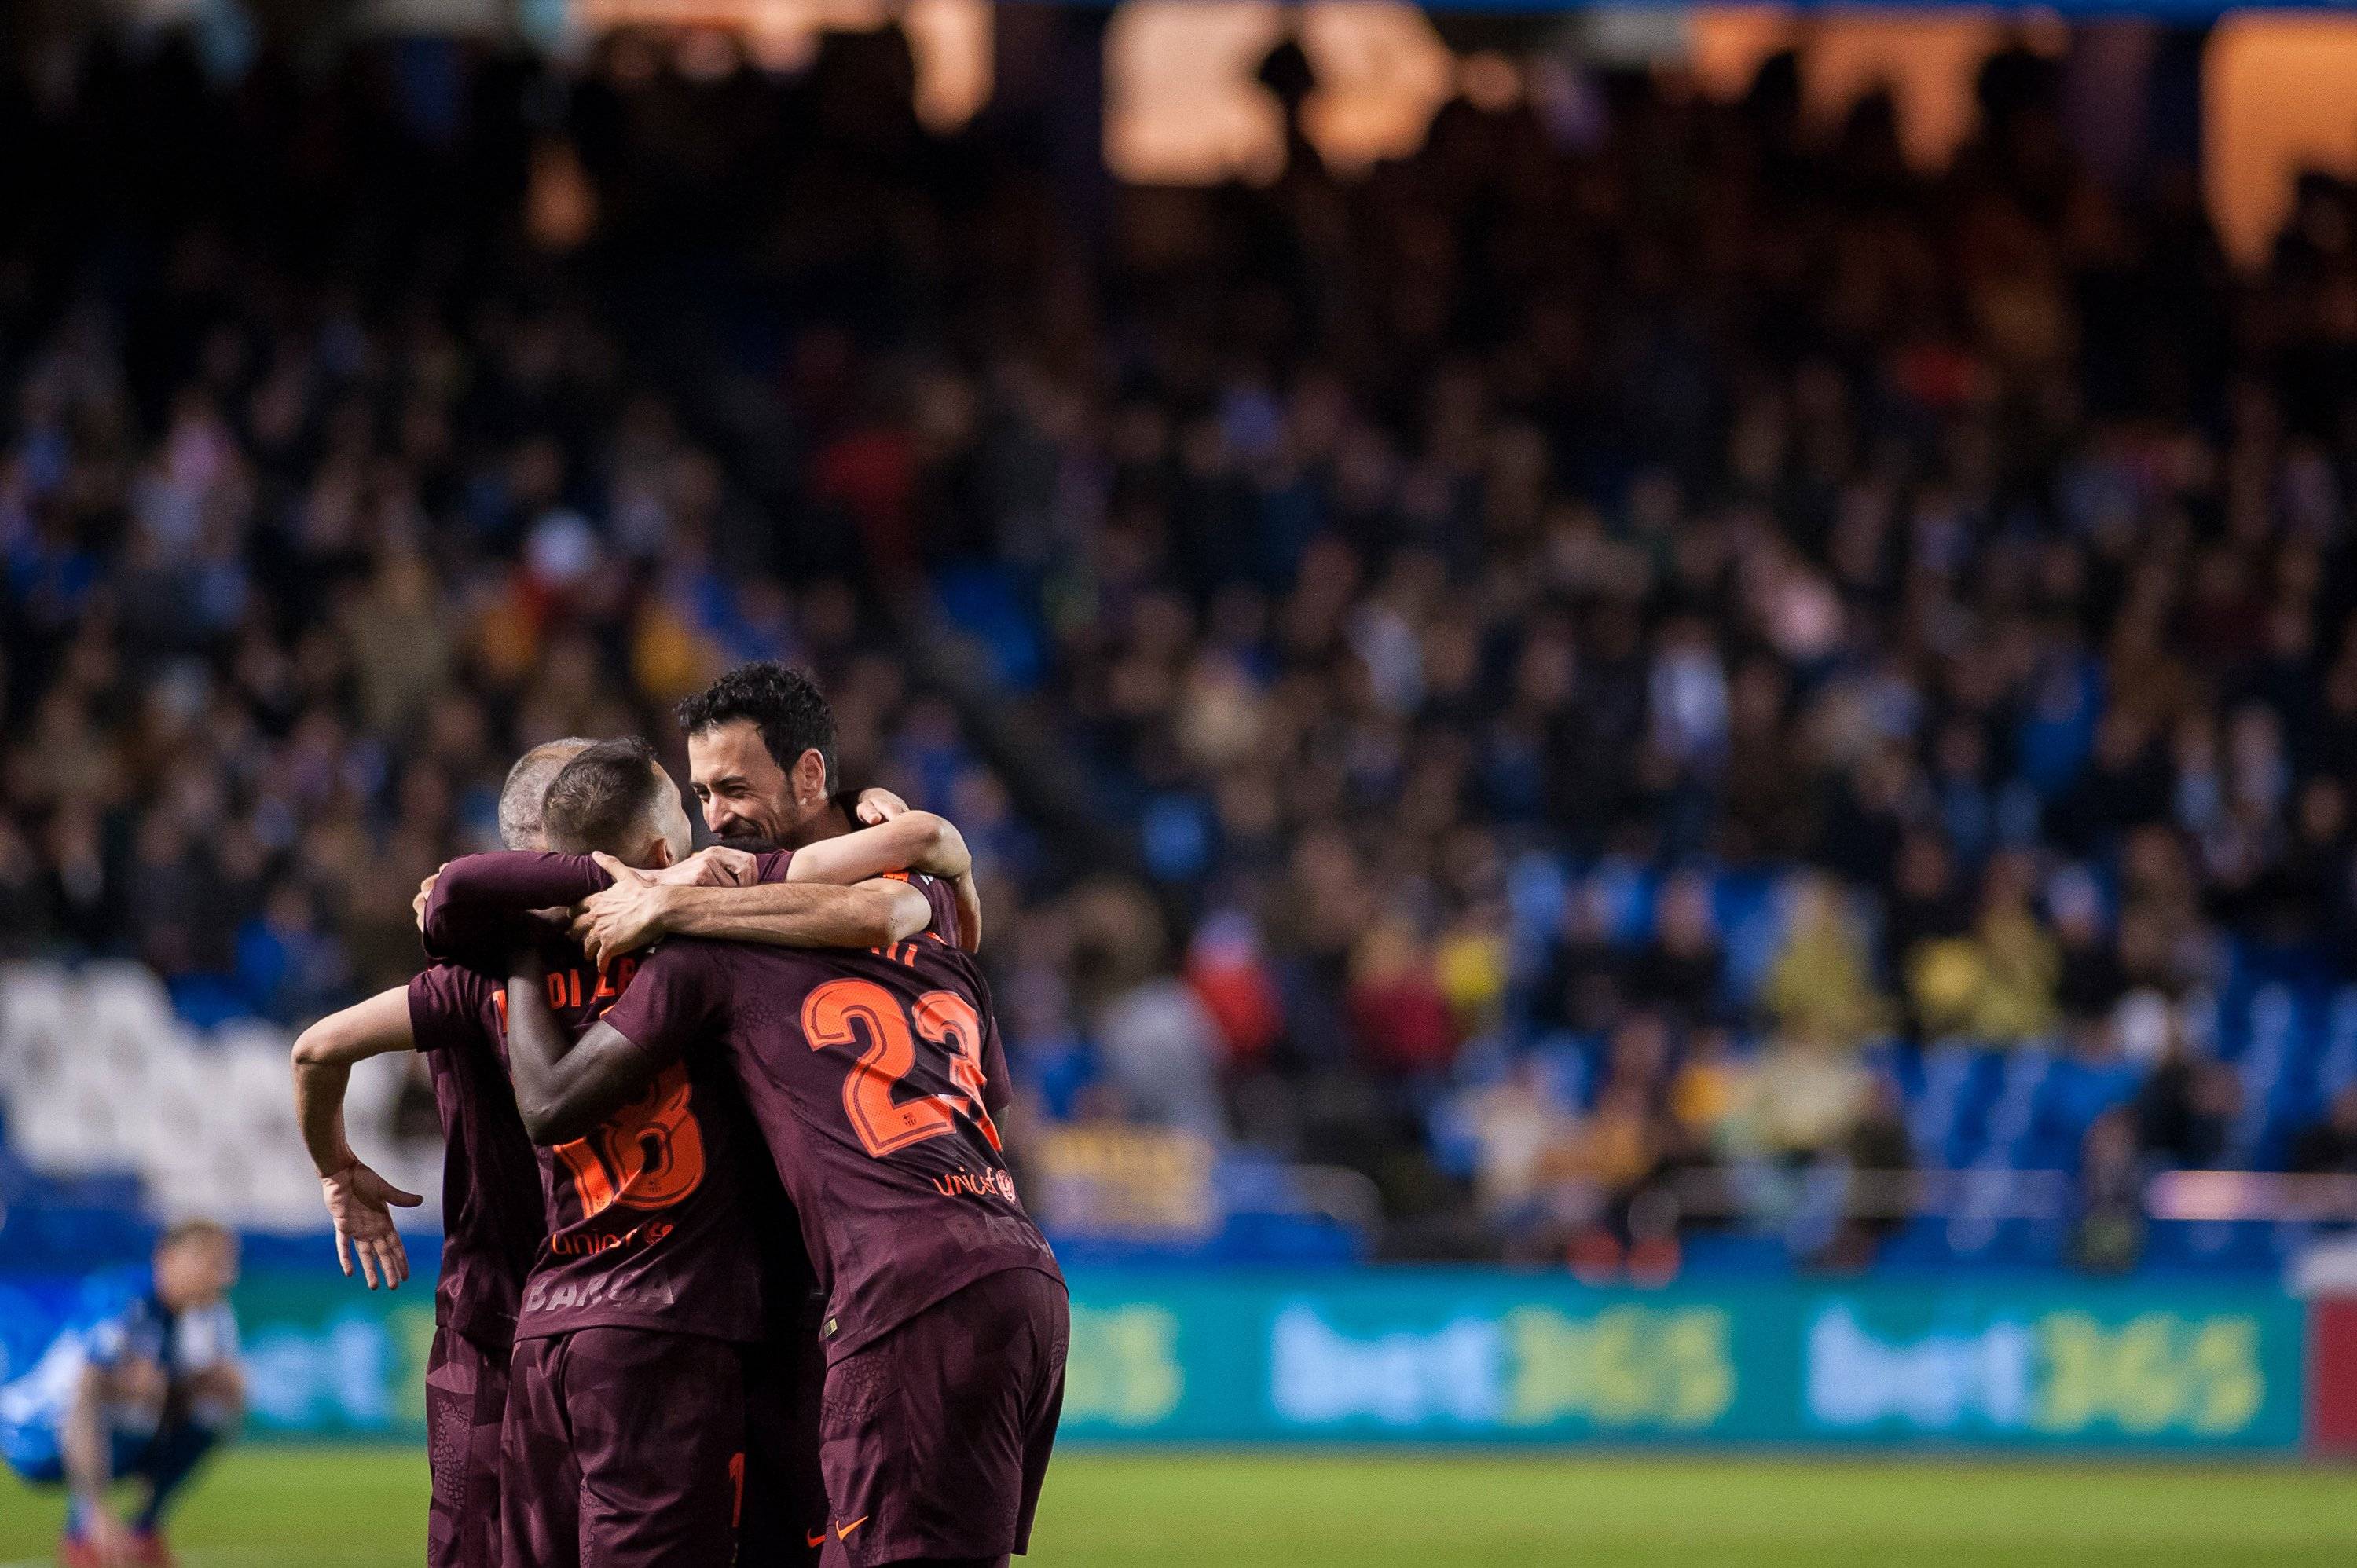 El Barça campió arrasa i fa que TV3 quedi última